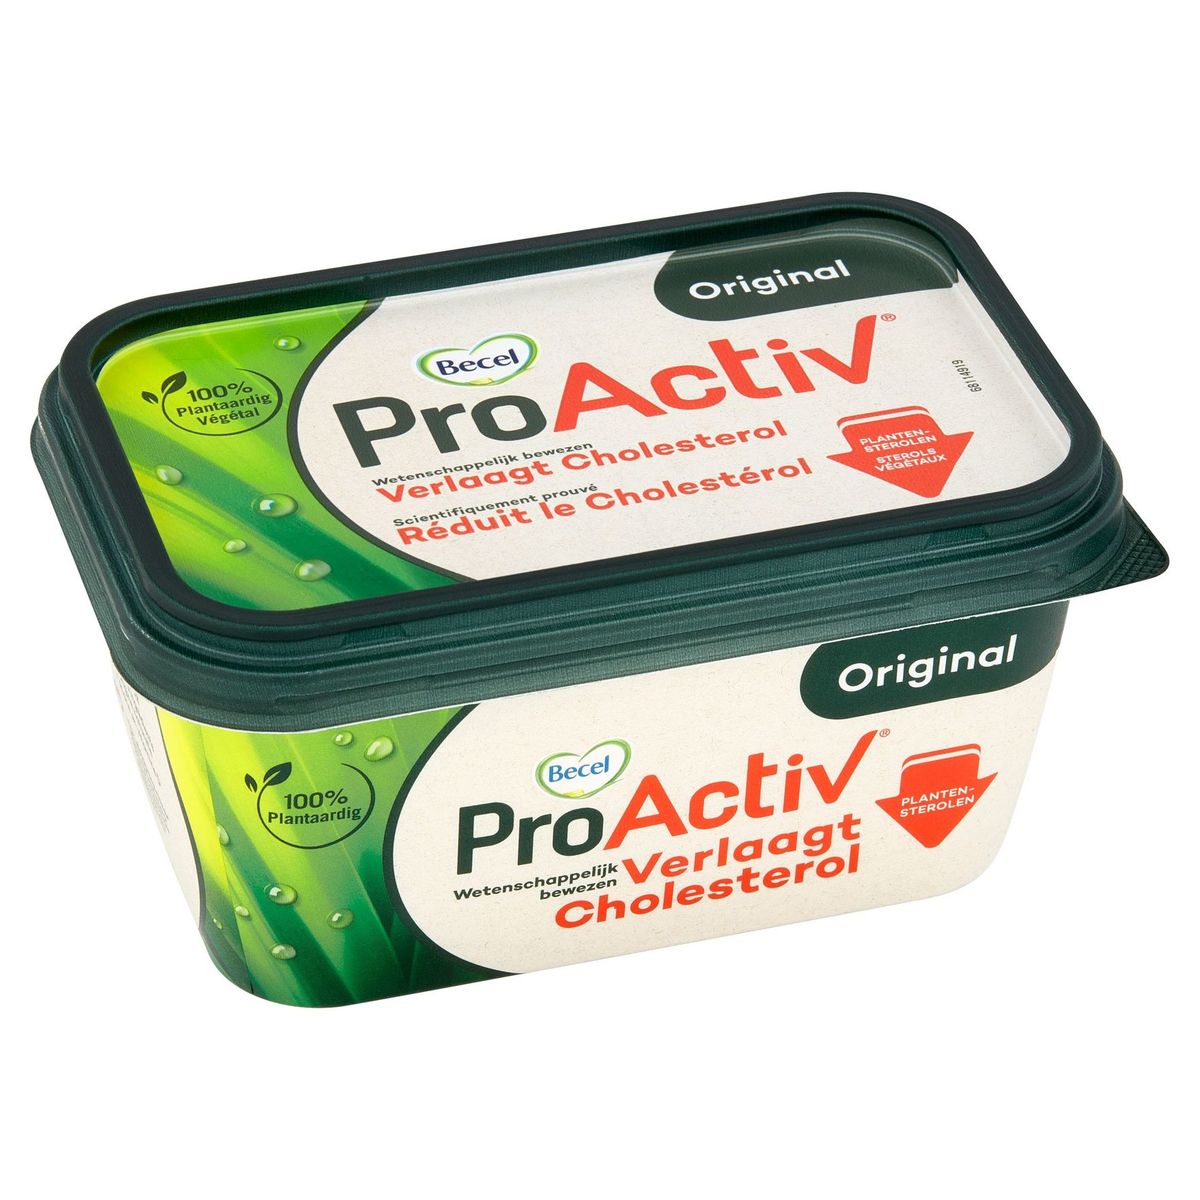 ProActiv | Réduit le cholestérol | 475g